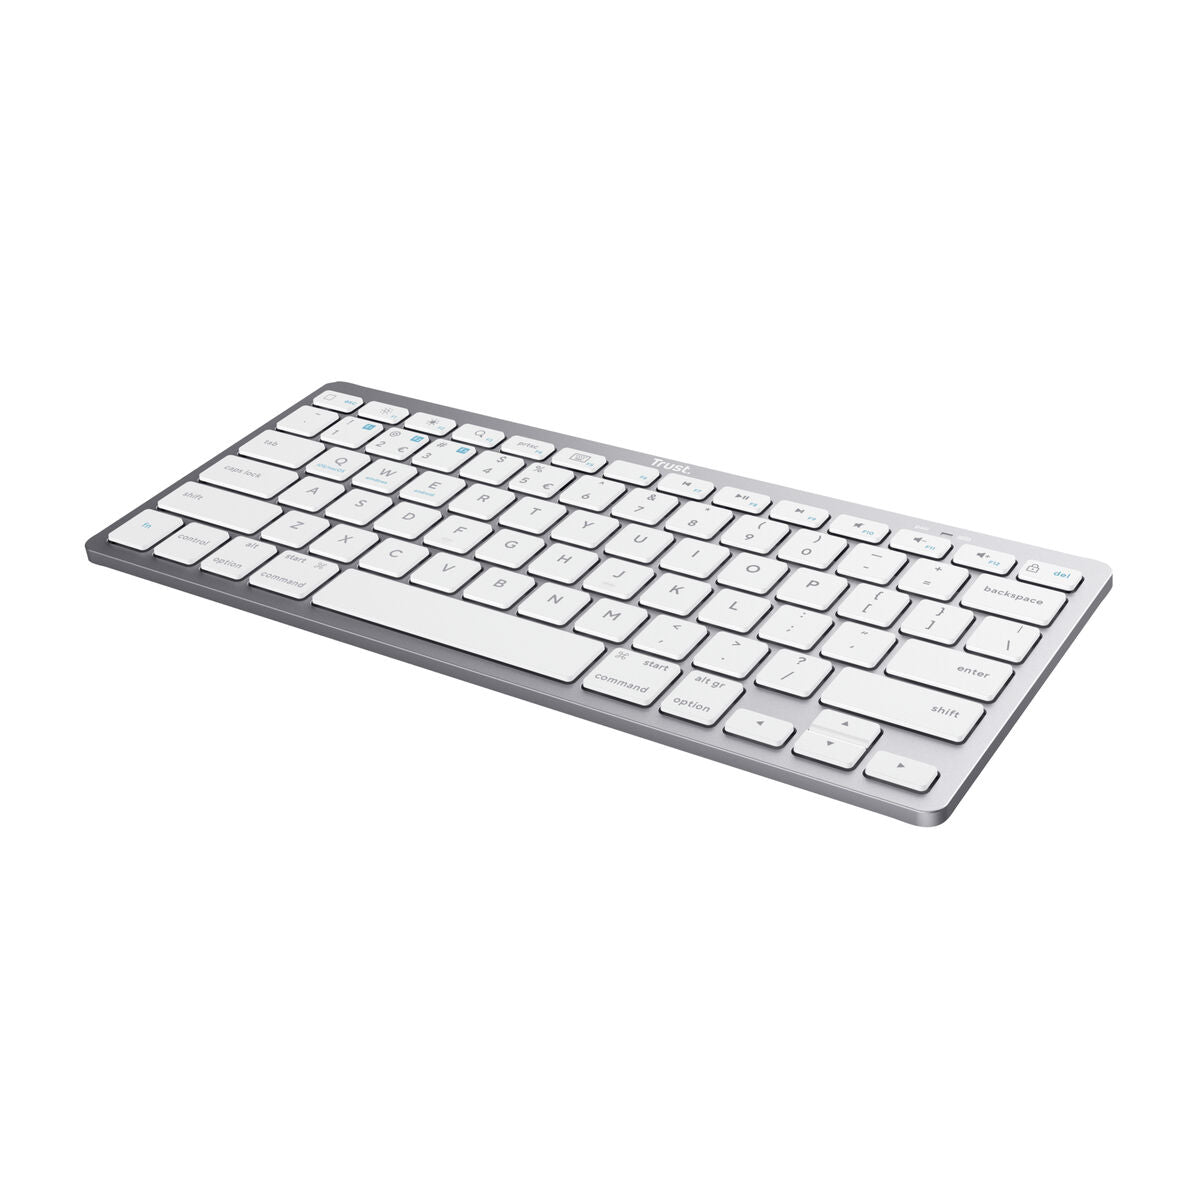 Drahtlose Tastatur Trust 24653 Qwertz Deutsch - CA International  